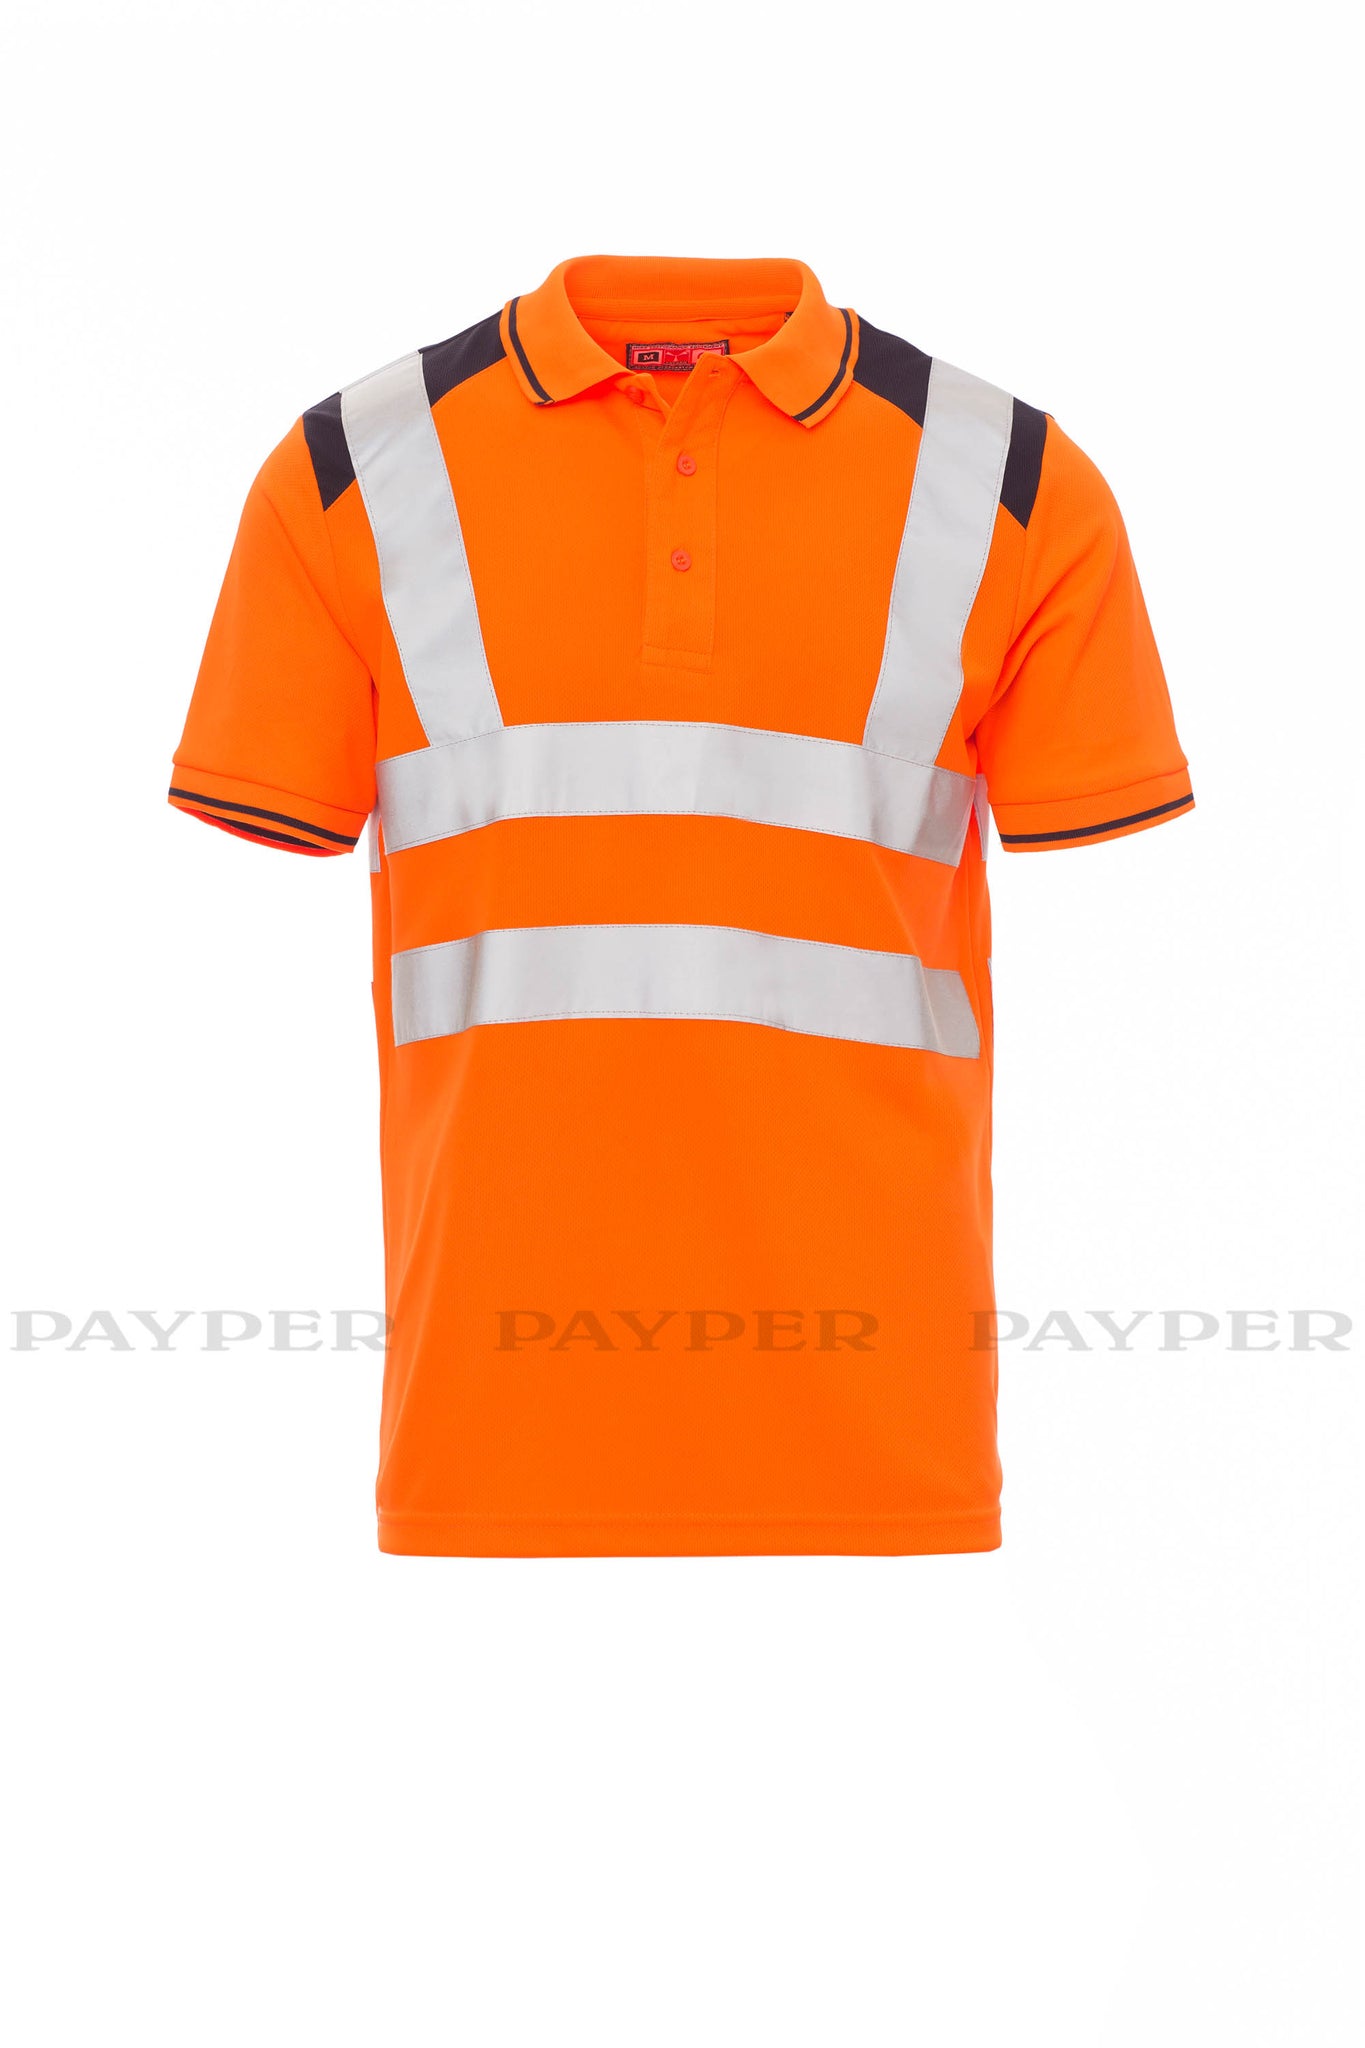 Payper Warnschutz Poloshirt GUARD+ | Herren-Poloshirt mit Reflexstreifen - Erhöhte Sichtbarkeit